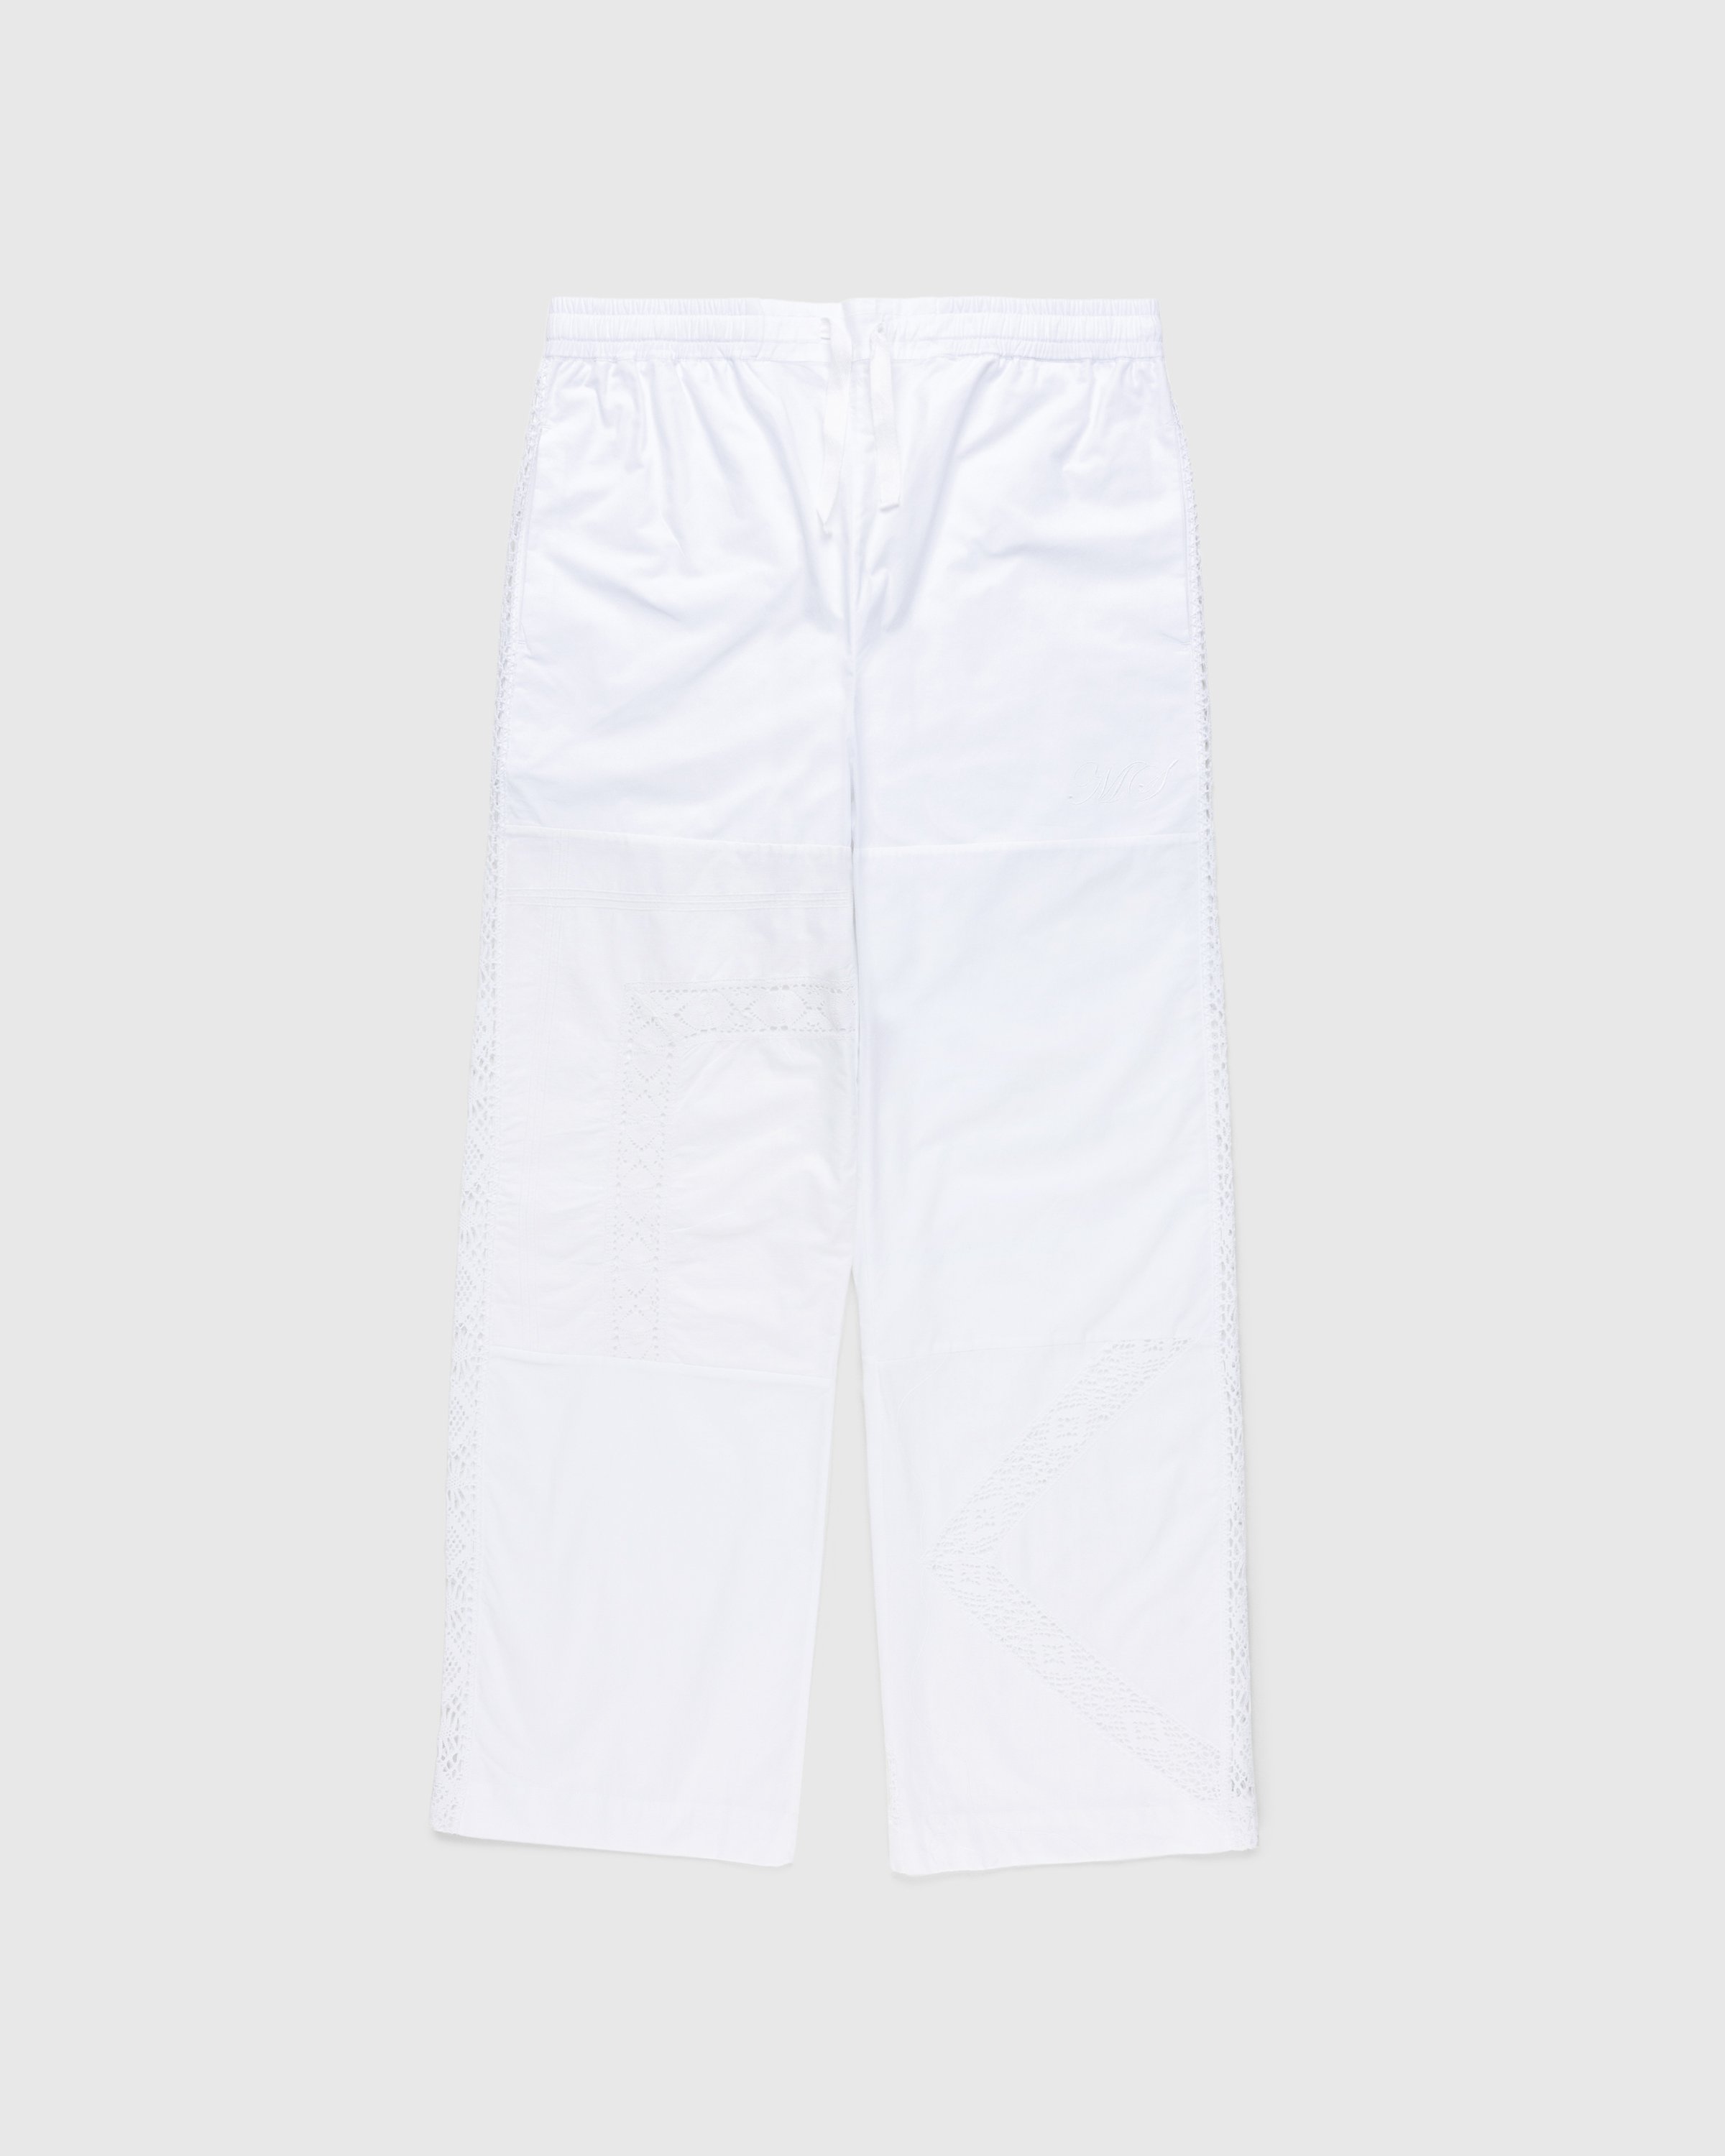 Marine Serre - Regenerated Household Linen Pajama Pants White - Clothing - White - Image 1